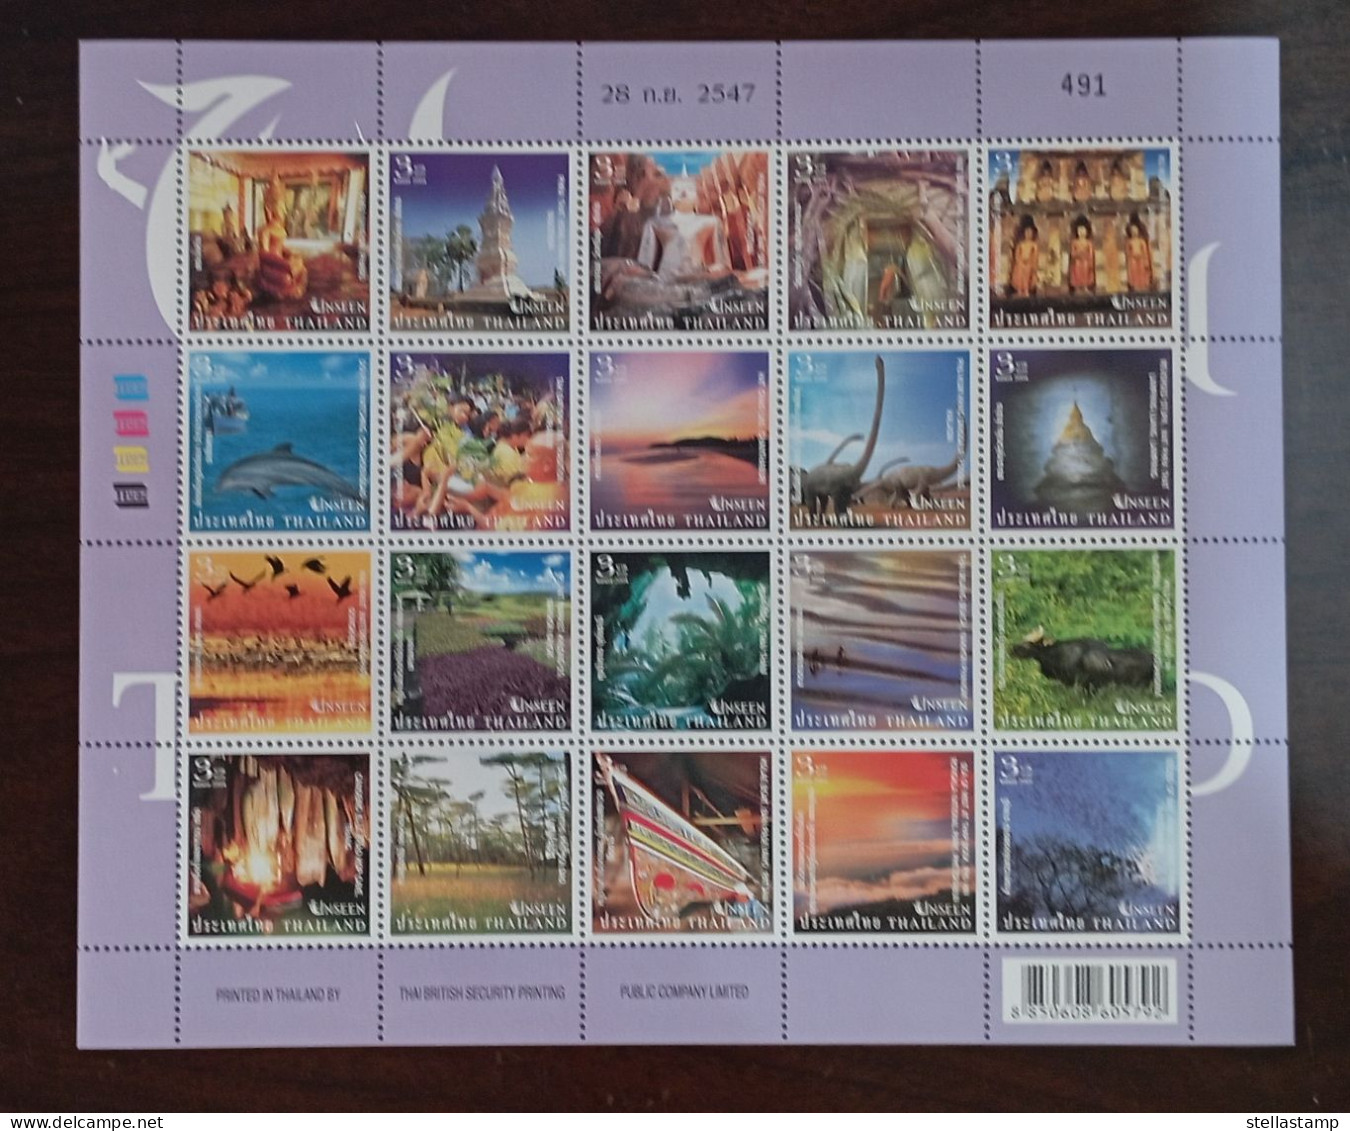 Thailand Stamp FS 2004 Unseen Thailand 3rd - Tailandia